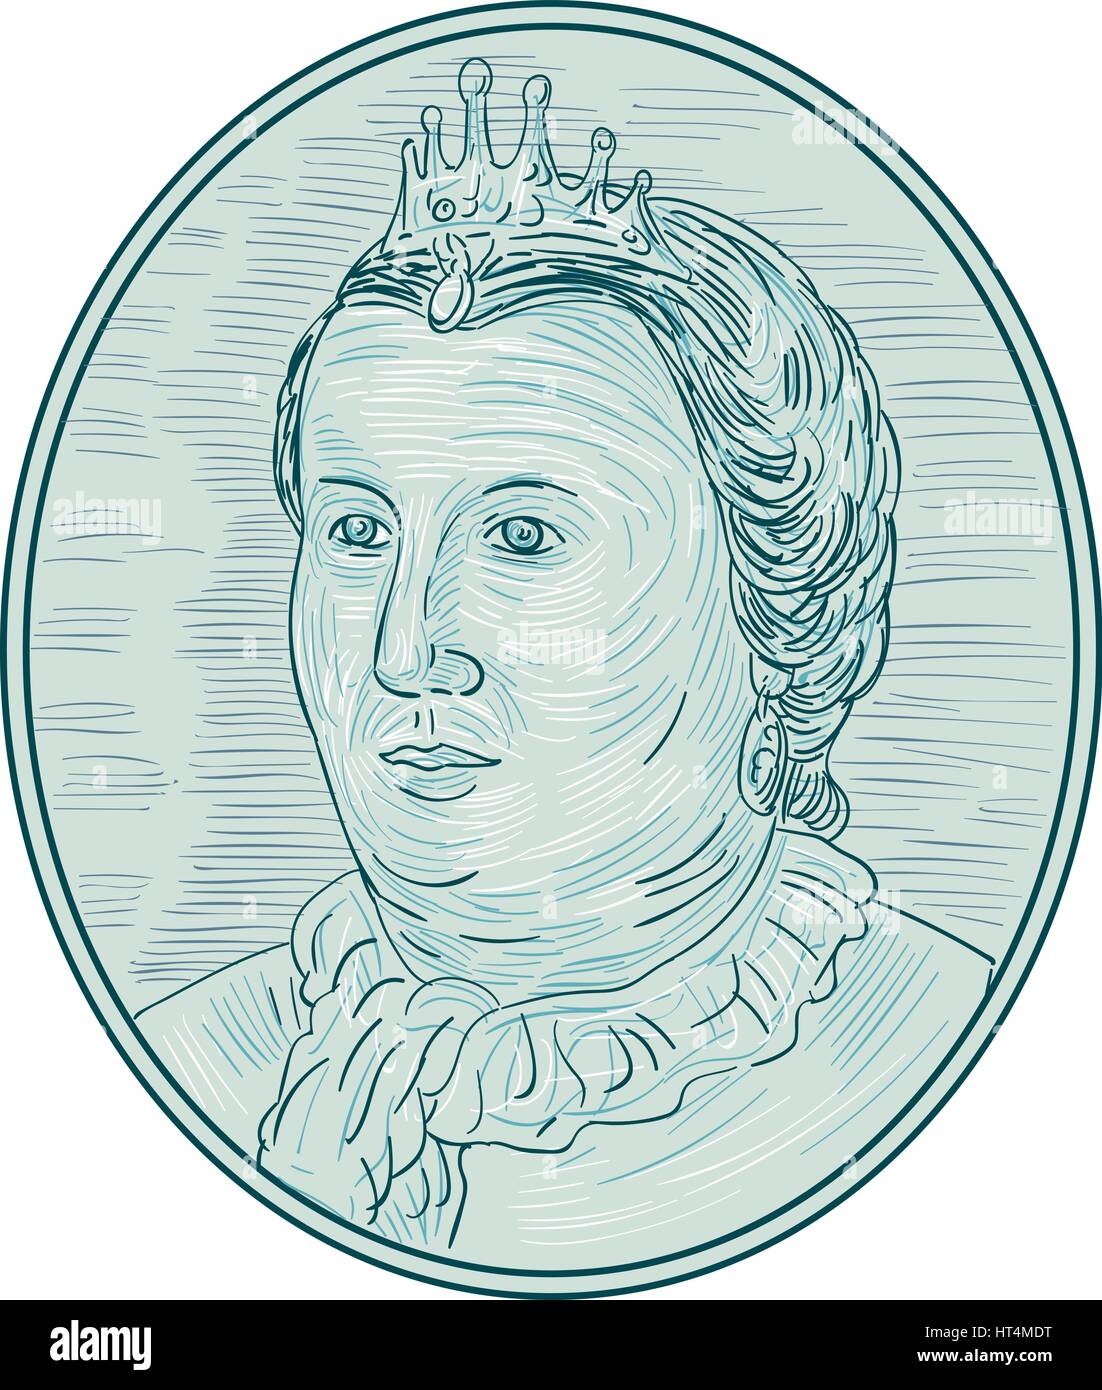 Croquis dessin illustration style du xviiie siècle, de l'impératrice européenne avec buste à la couronne sur le côté vue de l'avant ensemble à l'intérieur de la forme ovale. Illustration de Vecteur